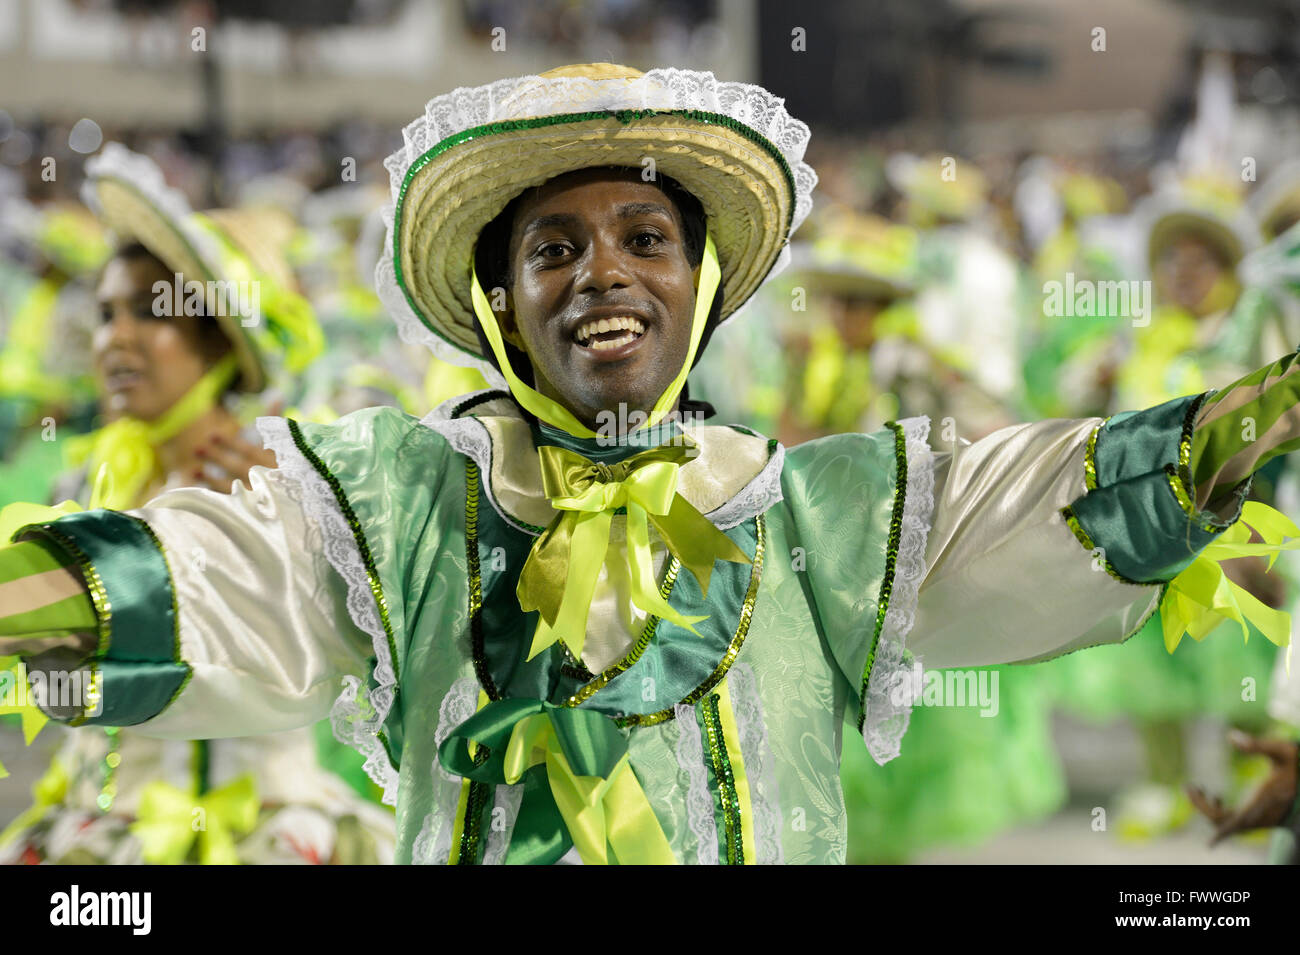 Smiling dancer, parade of the samba school Acadêmicos do Grande Rio, Carnival 2016 in the Sambodromo, Rio de Janeiro, Brazil Stock Photo